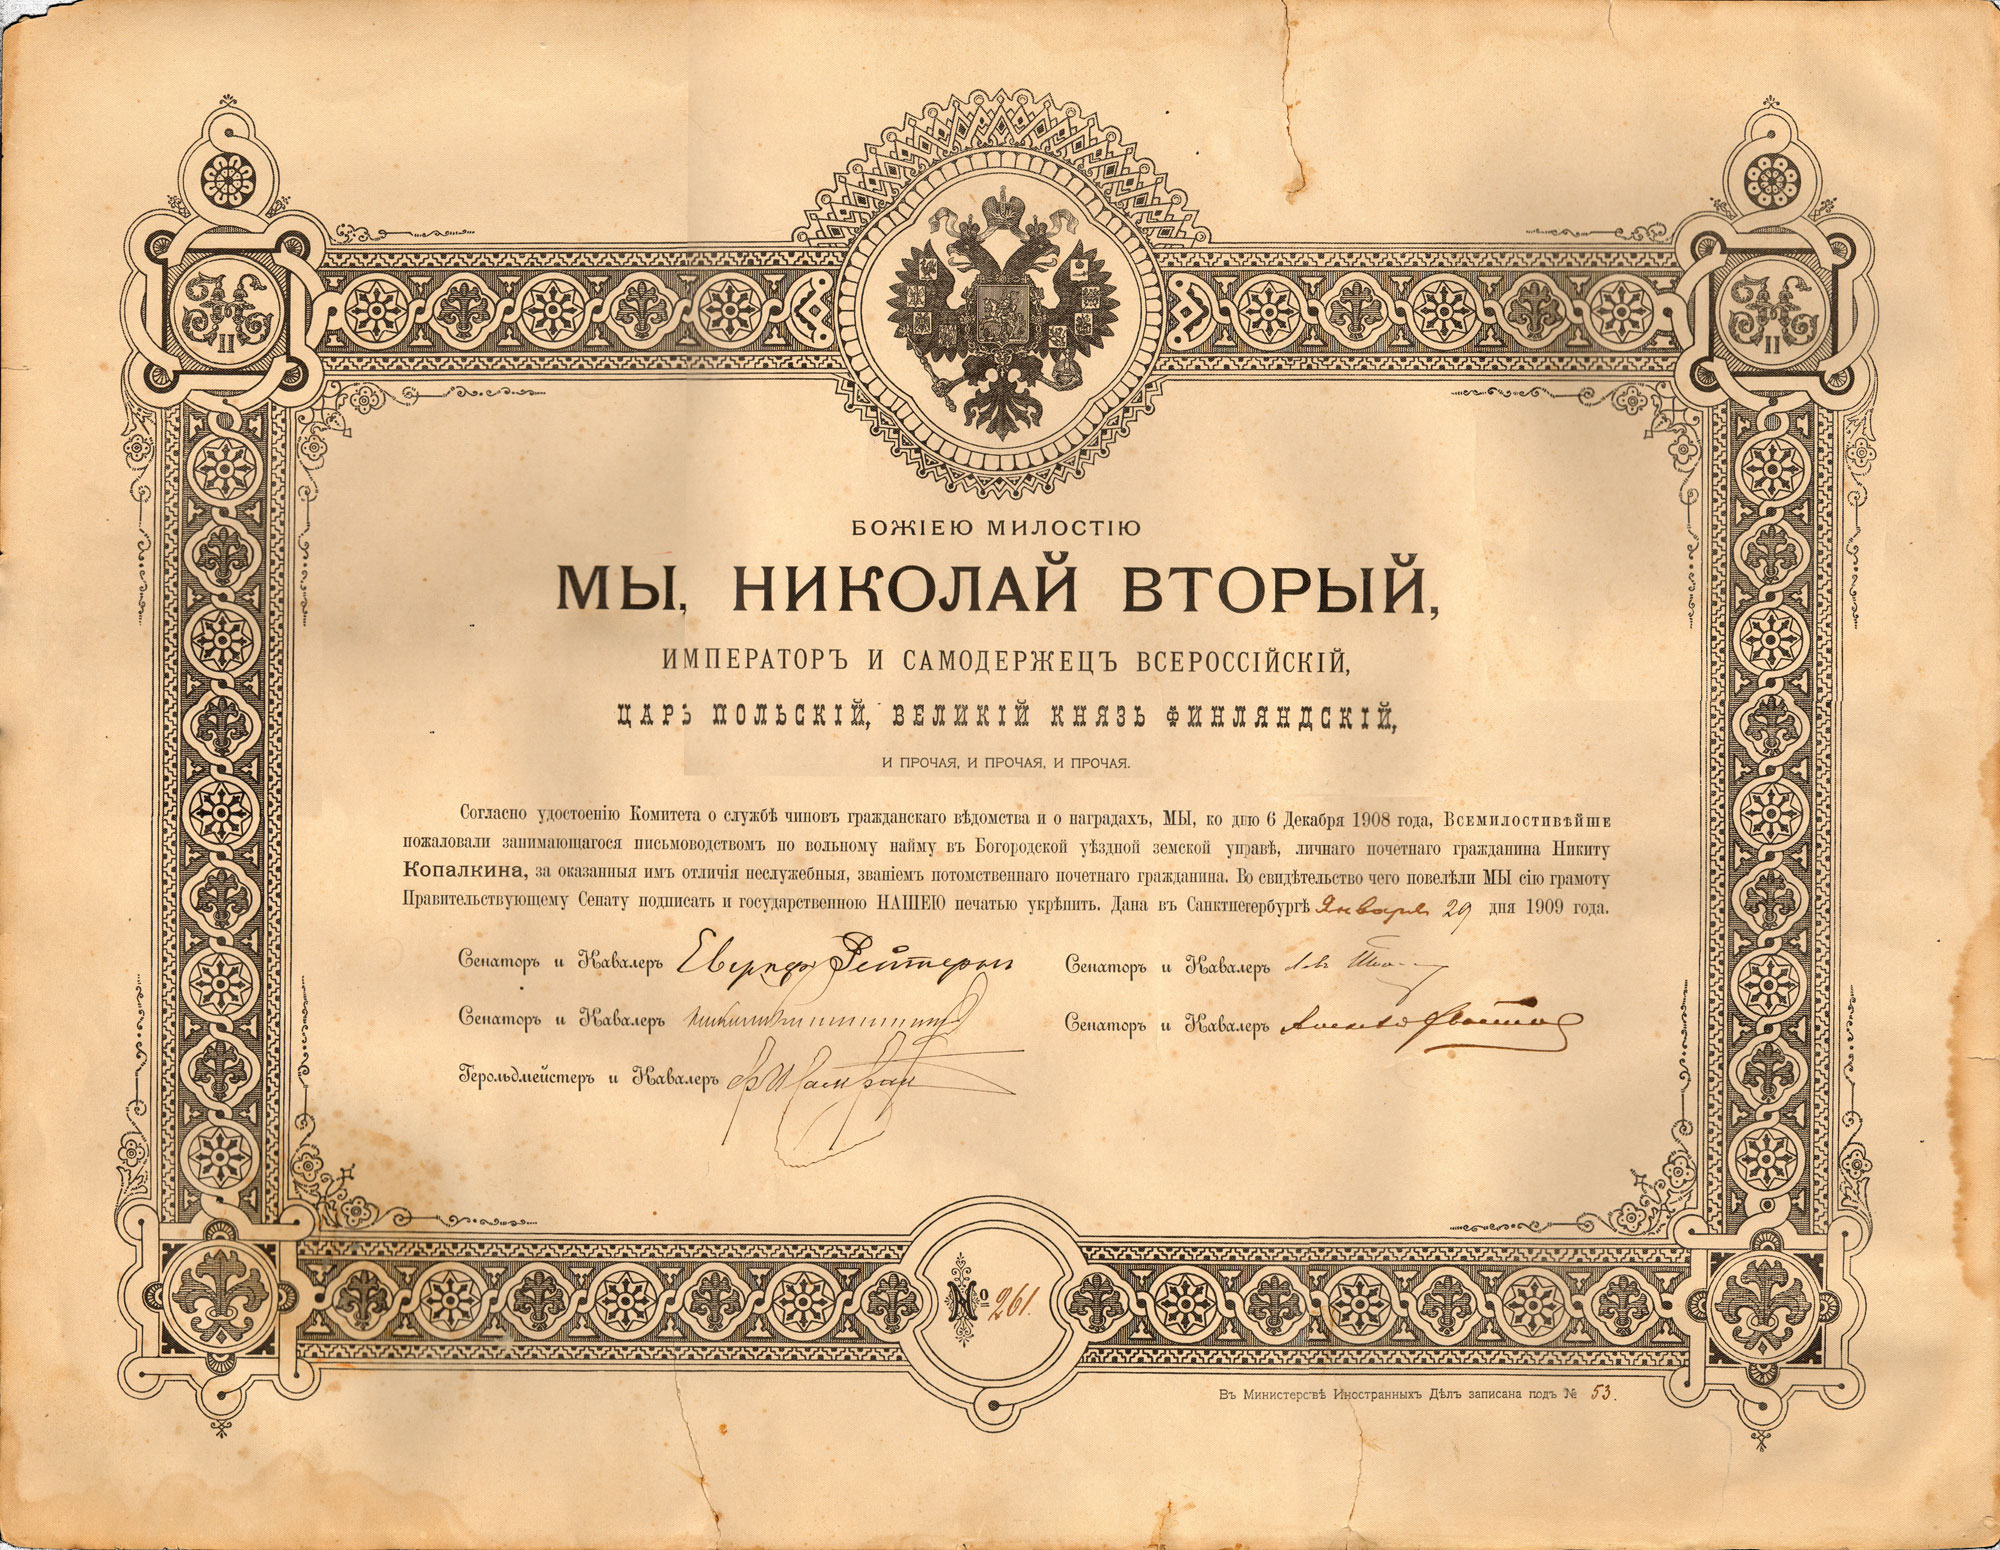 Документ о присвоении знания потомственного почетного гражданина Копалкину Никите Ивановичу